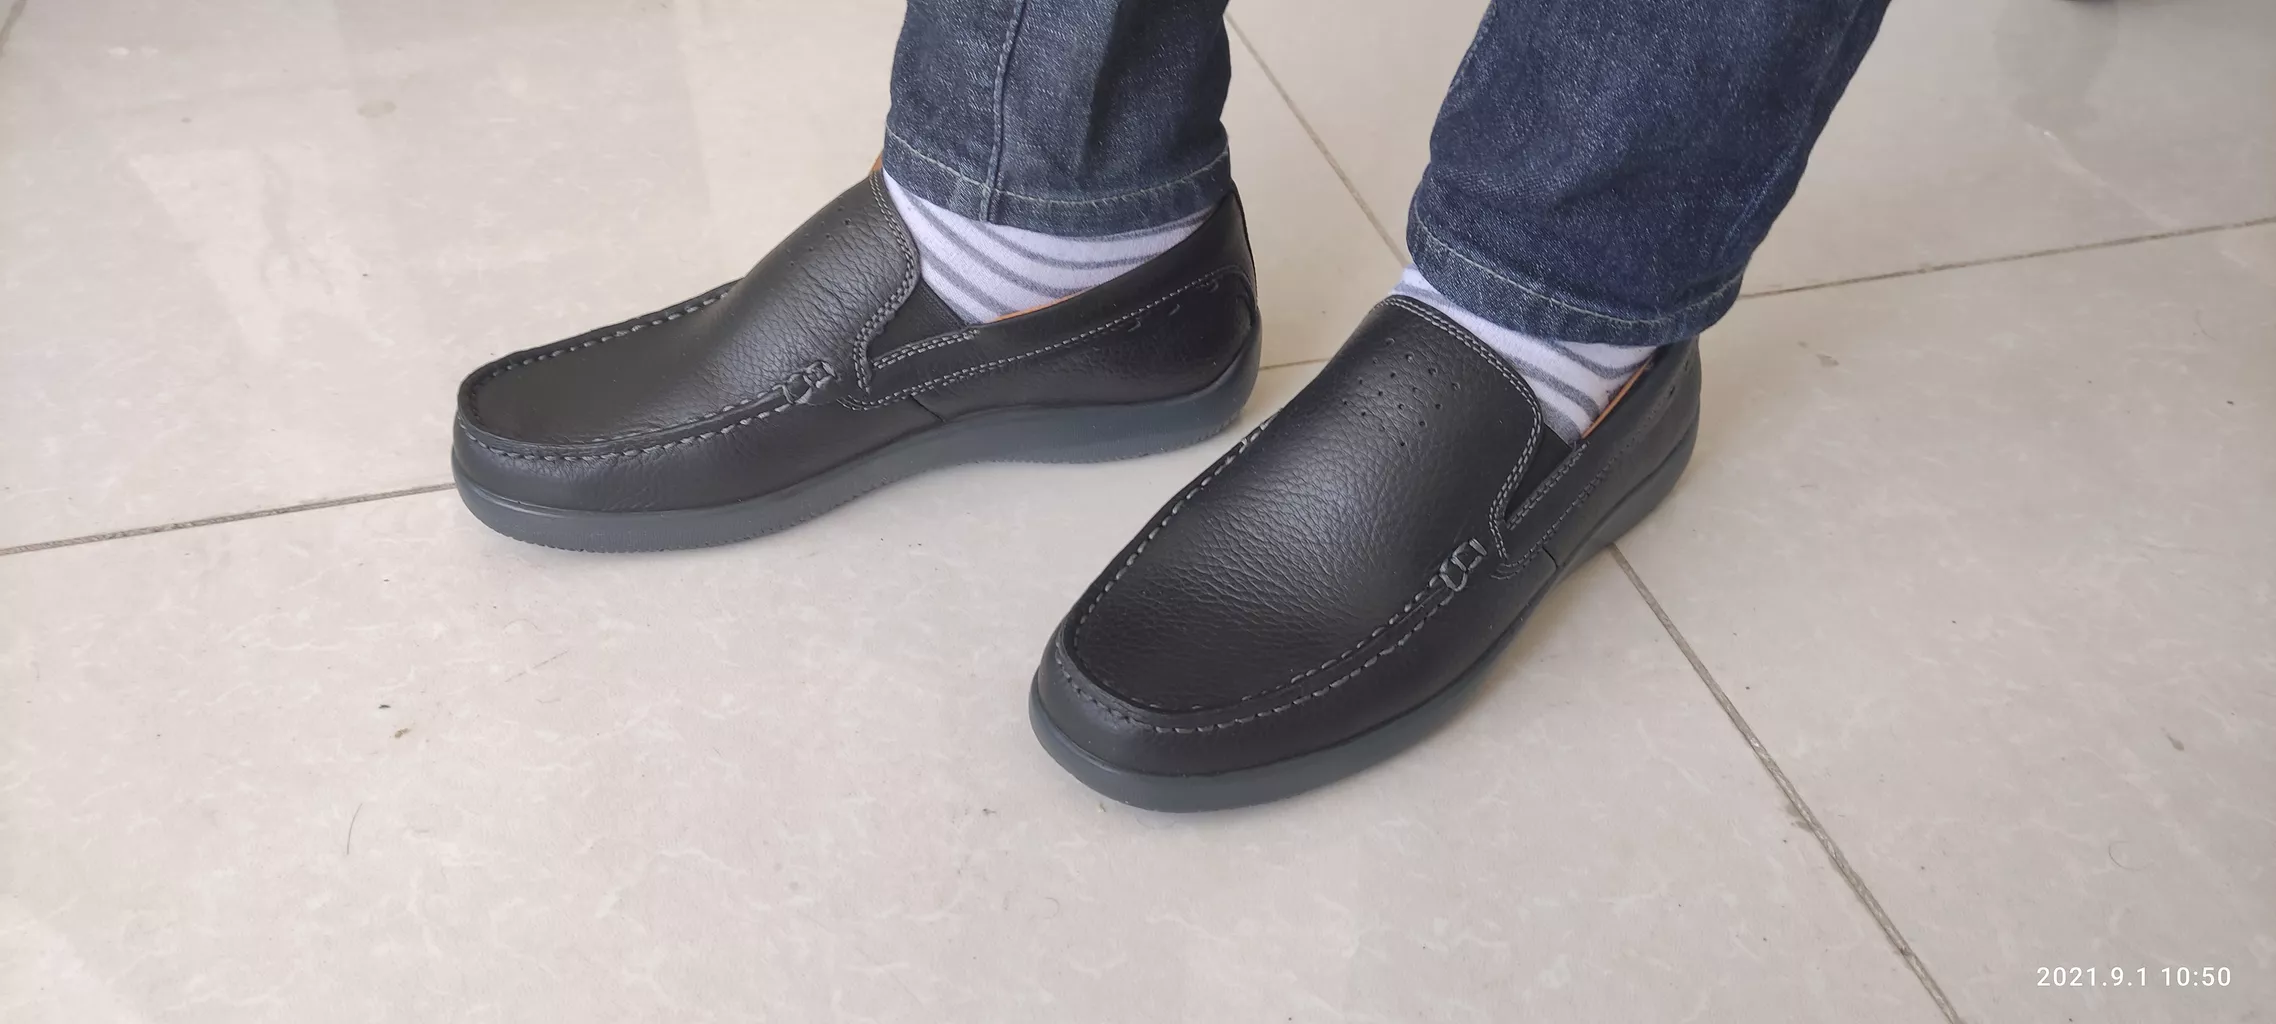 کفش روزمره مردانه فرزین مدل کالج رنگ مشکی